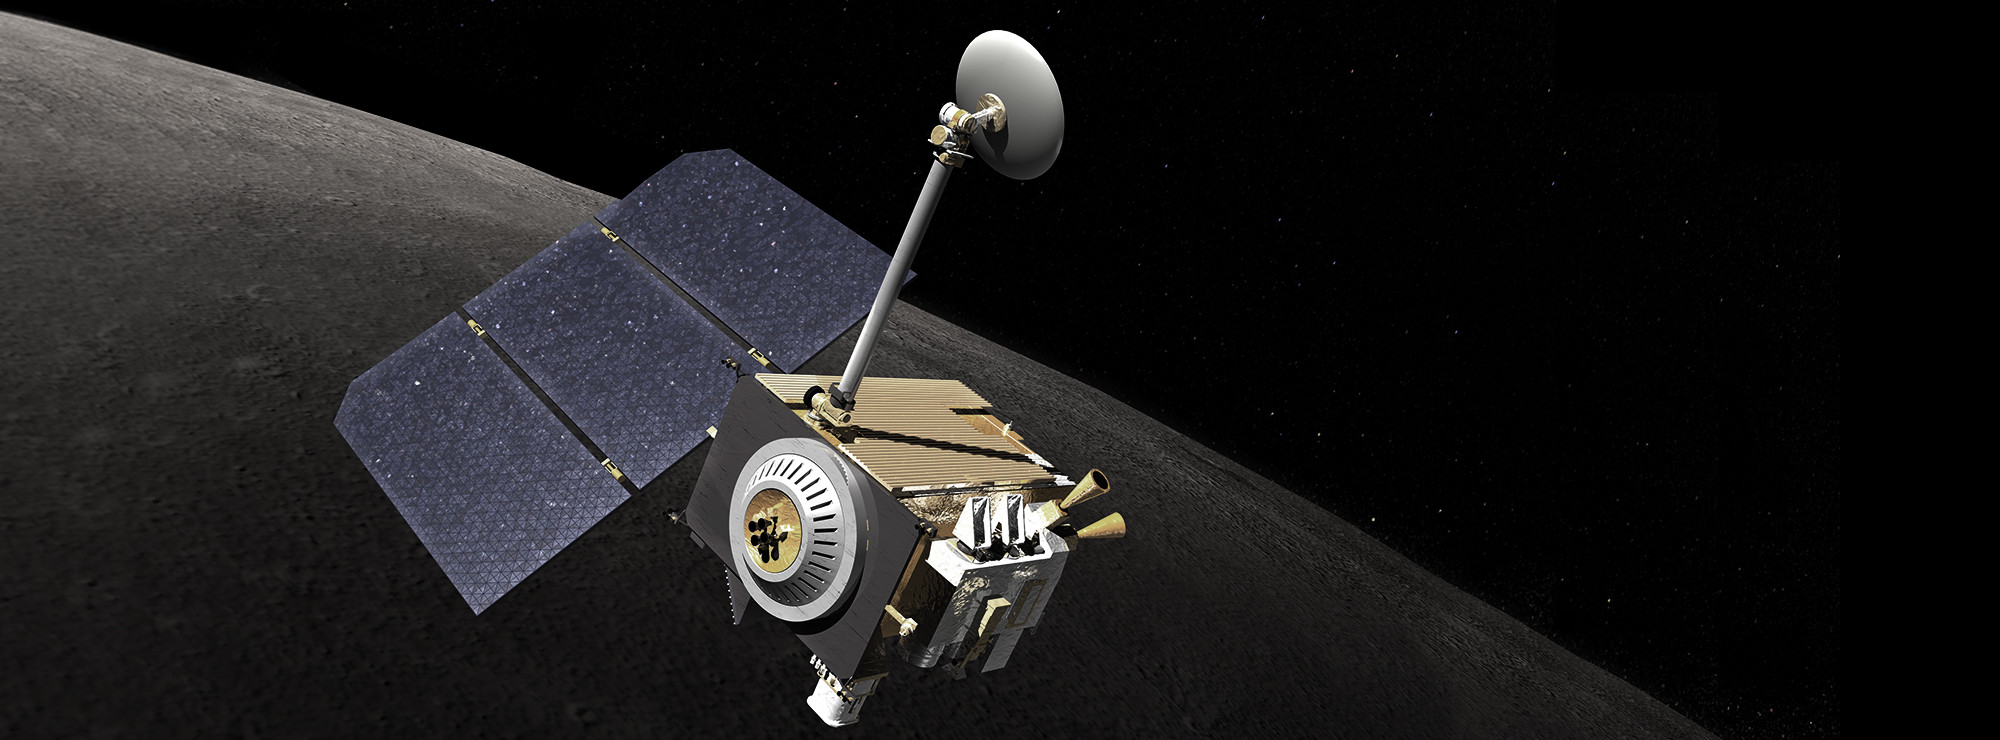 Lunar Reconnaissance Orbiter över Månen.  Bild: NASA - lunar.gsfc.nasa.gov.